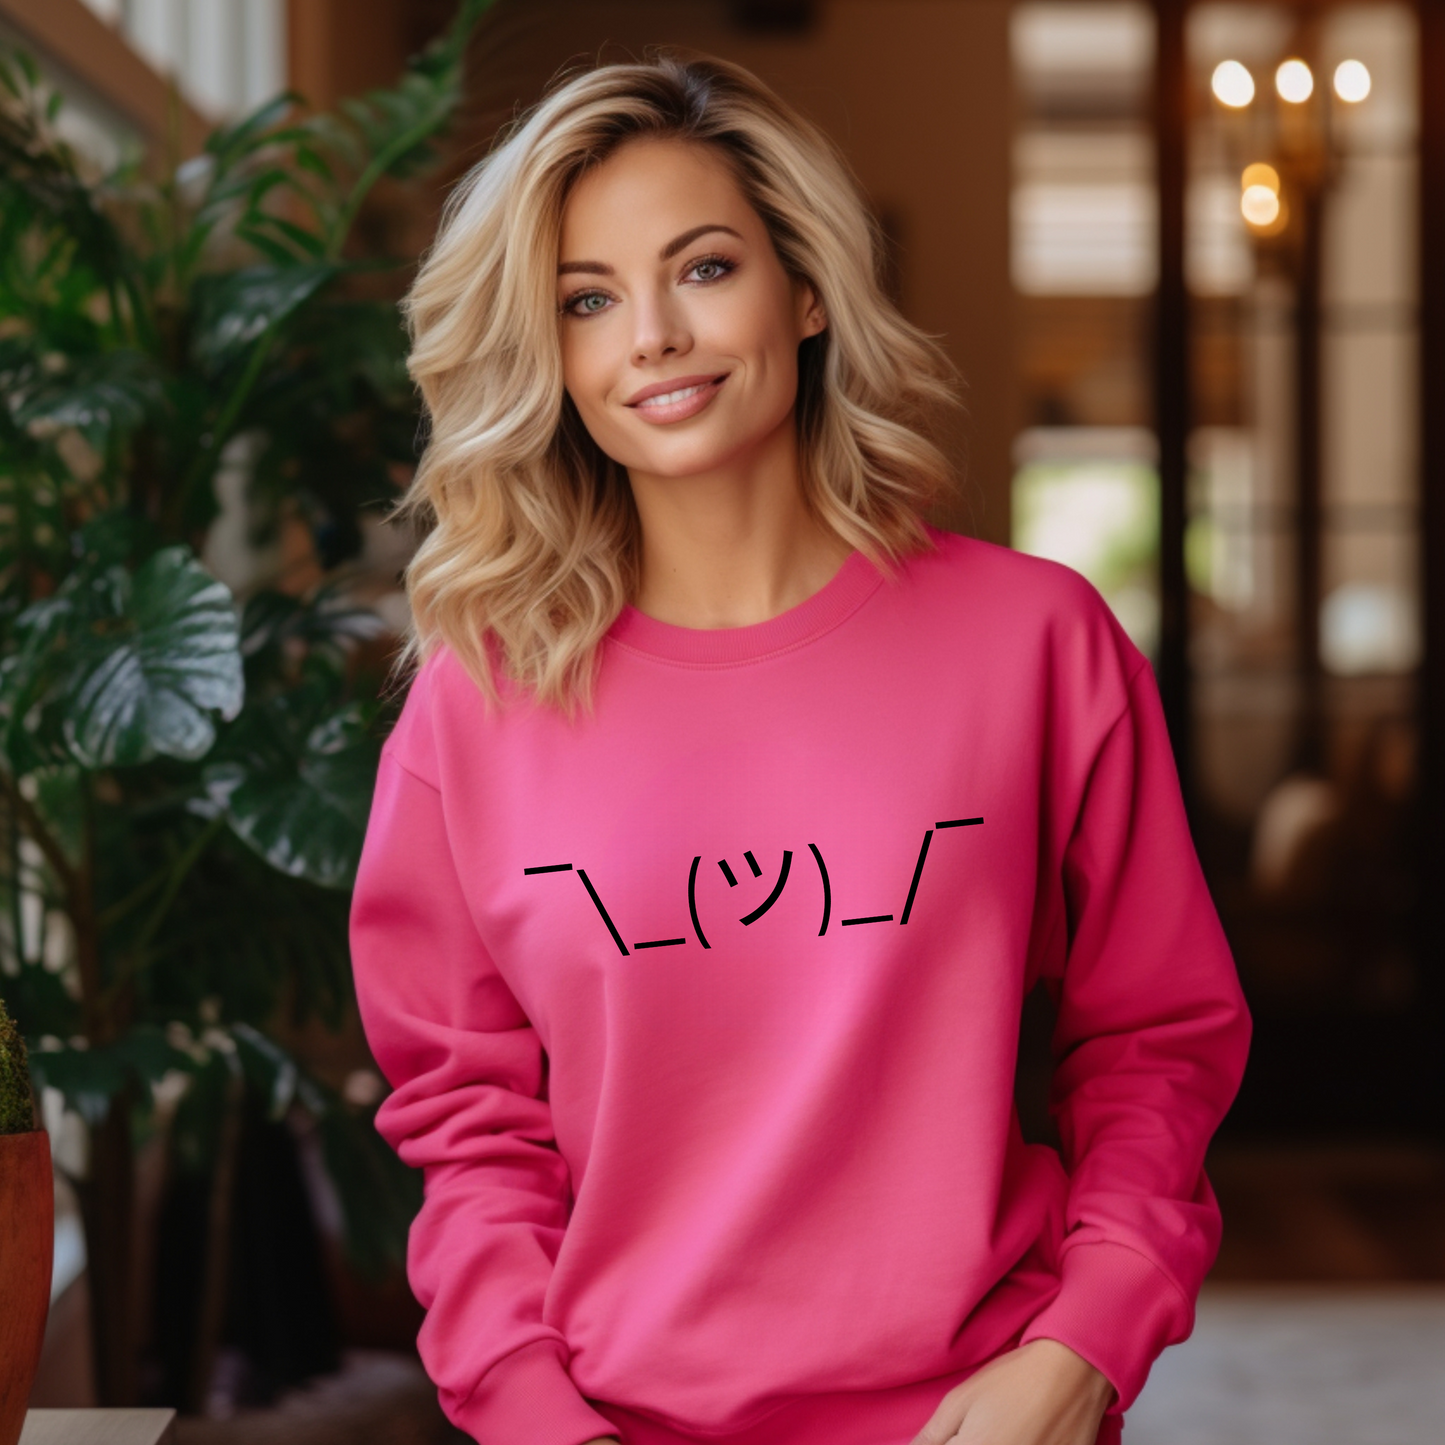 Cozy, Stylish, and Sarcastic Sweatshirt - Shrug Emoji